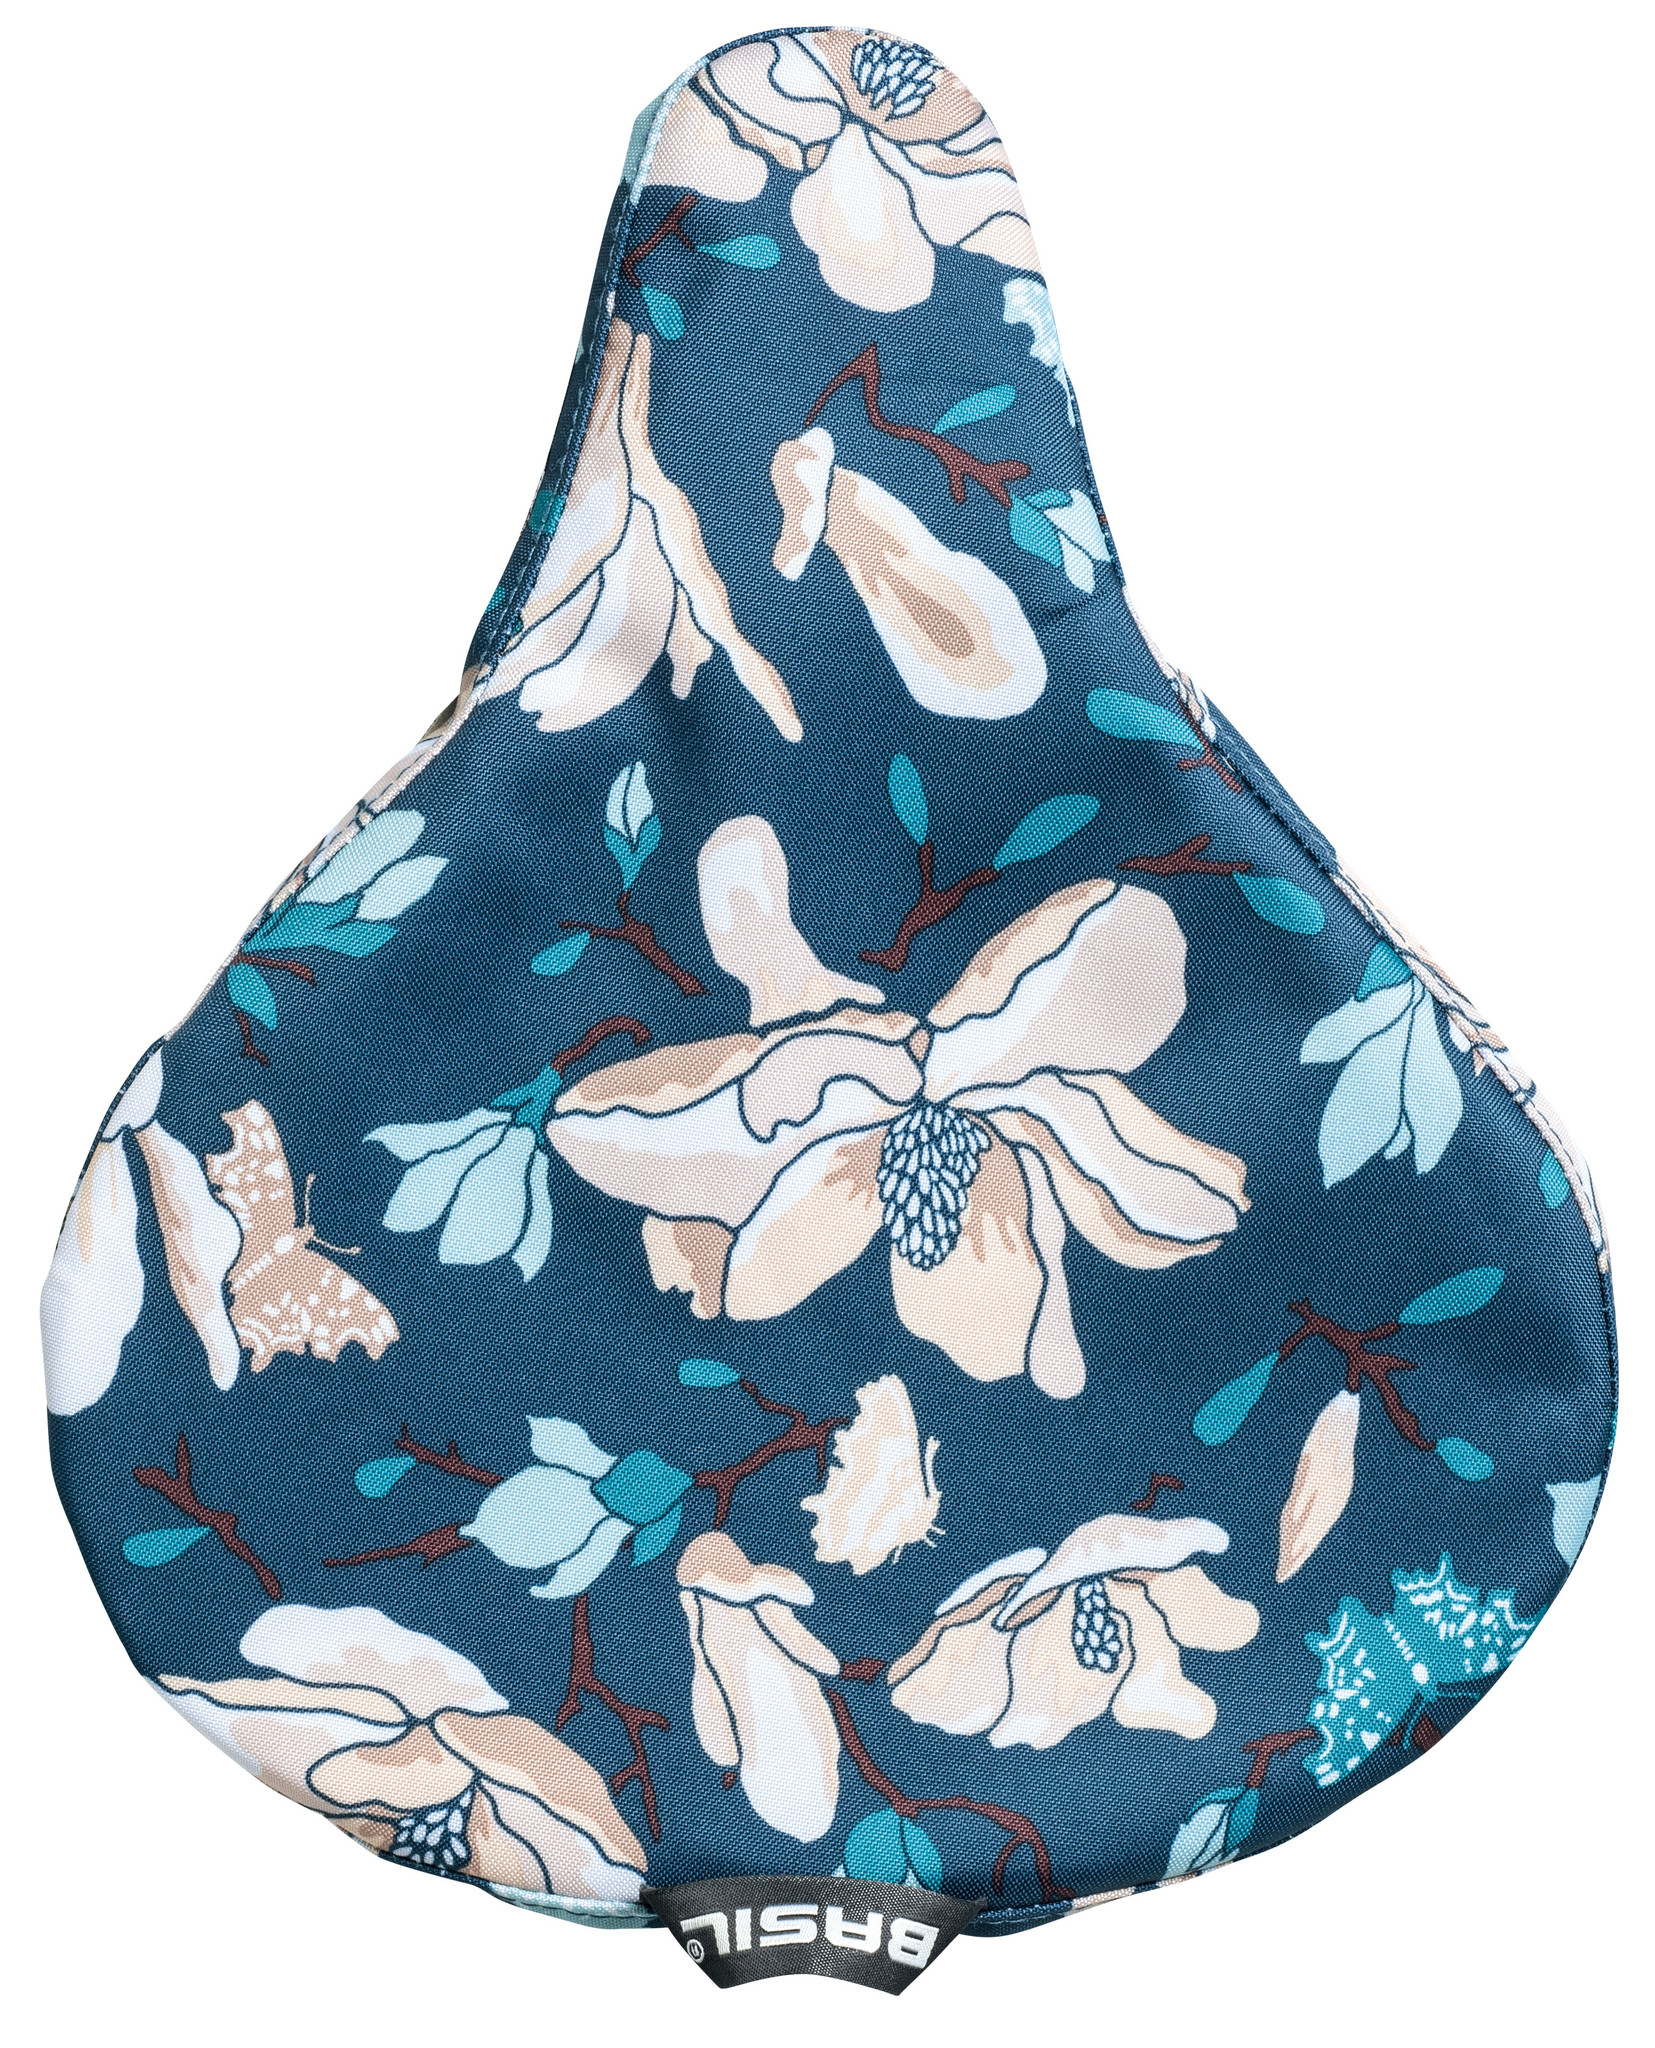 basil-magnolia-saddle-cover-blue